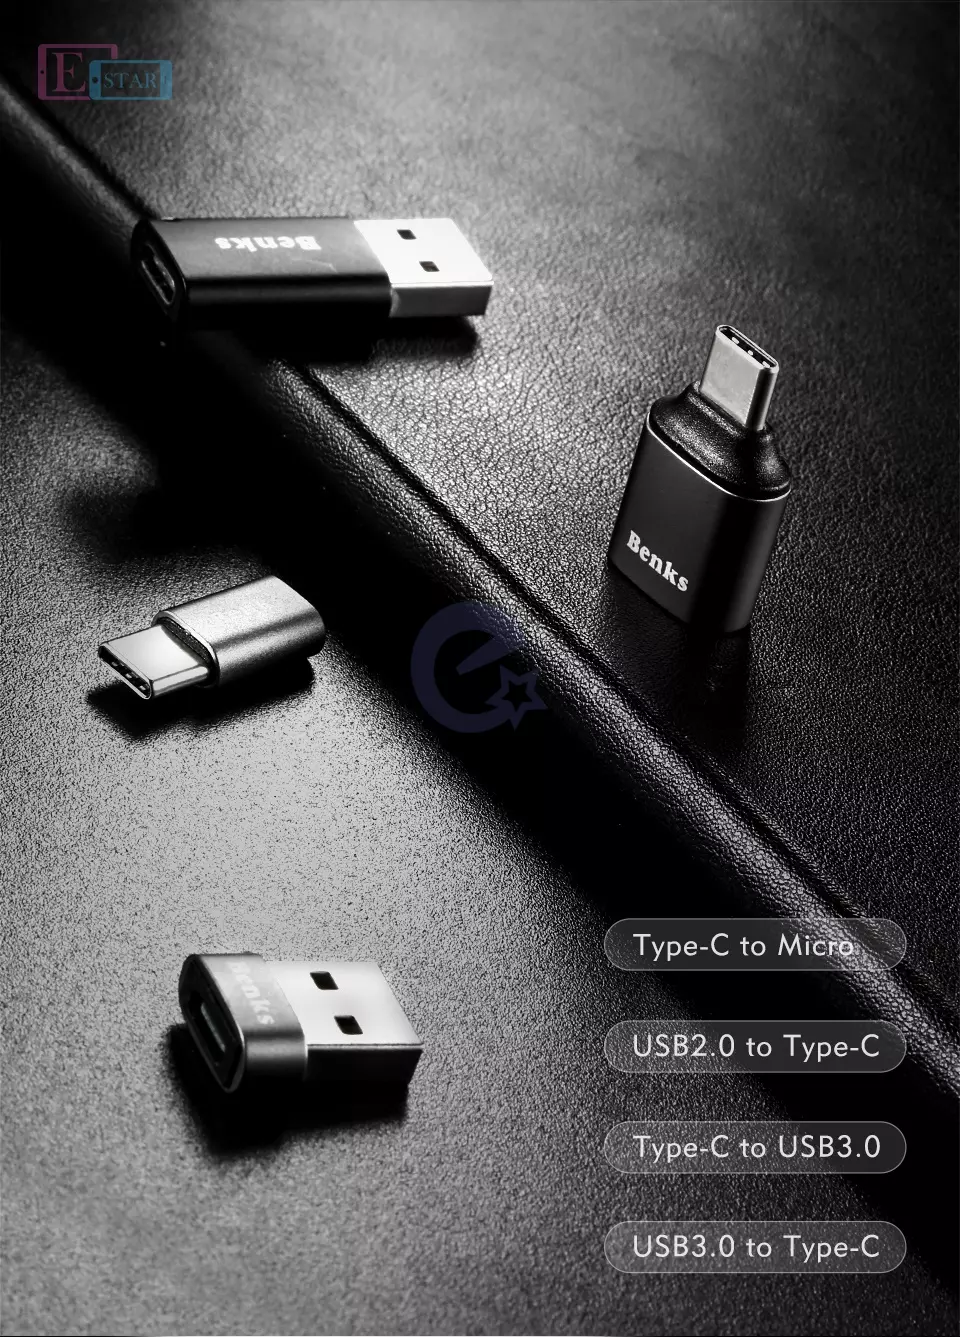 Переходник Benks Type-C to Micro USB OTG Adapter для планшетов и смартфонов Gray (Серый)